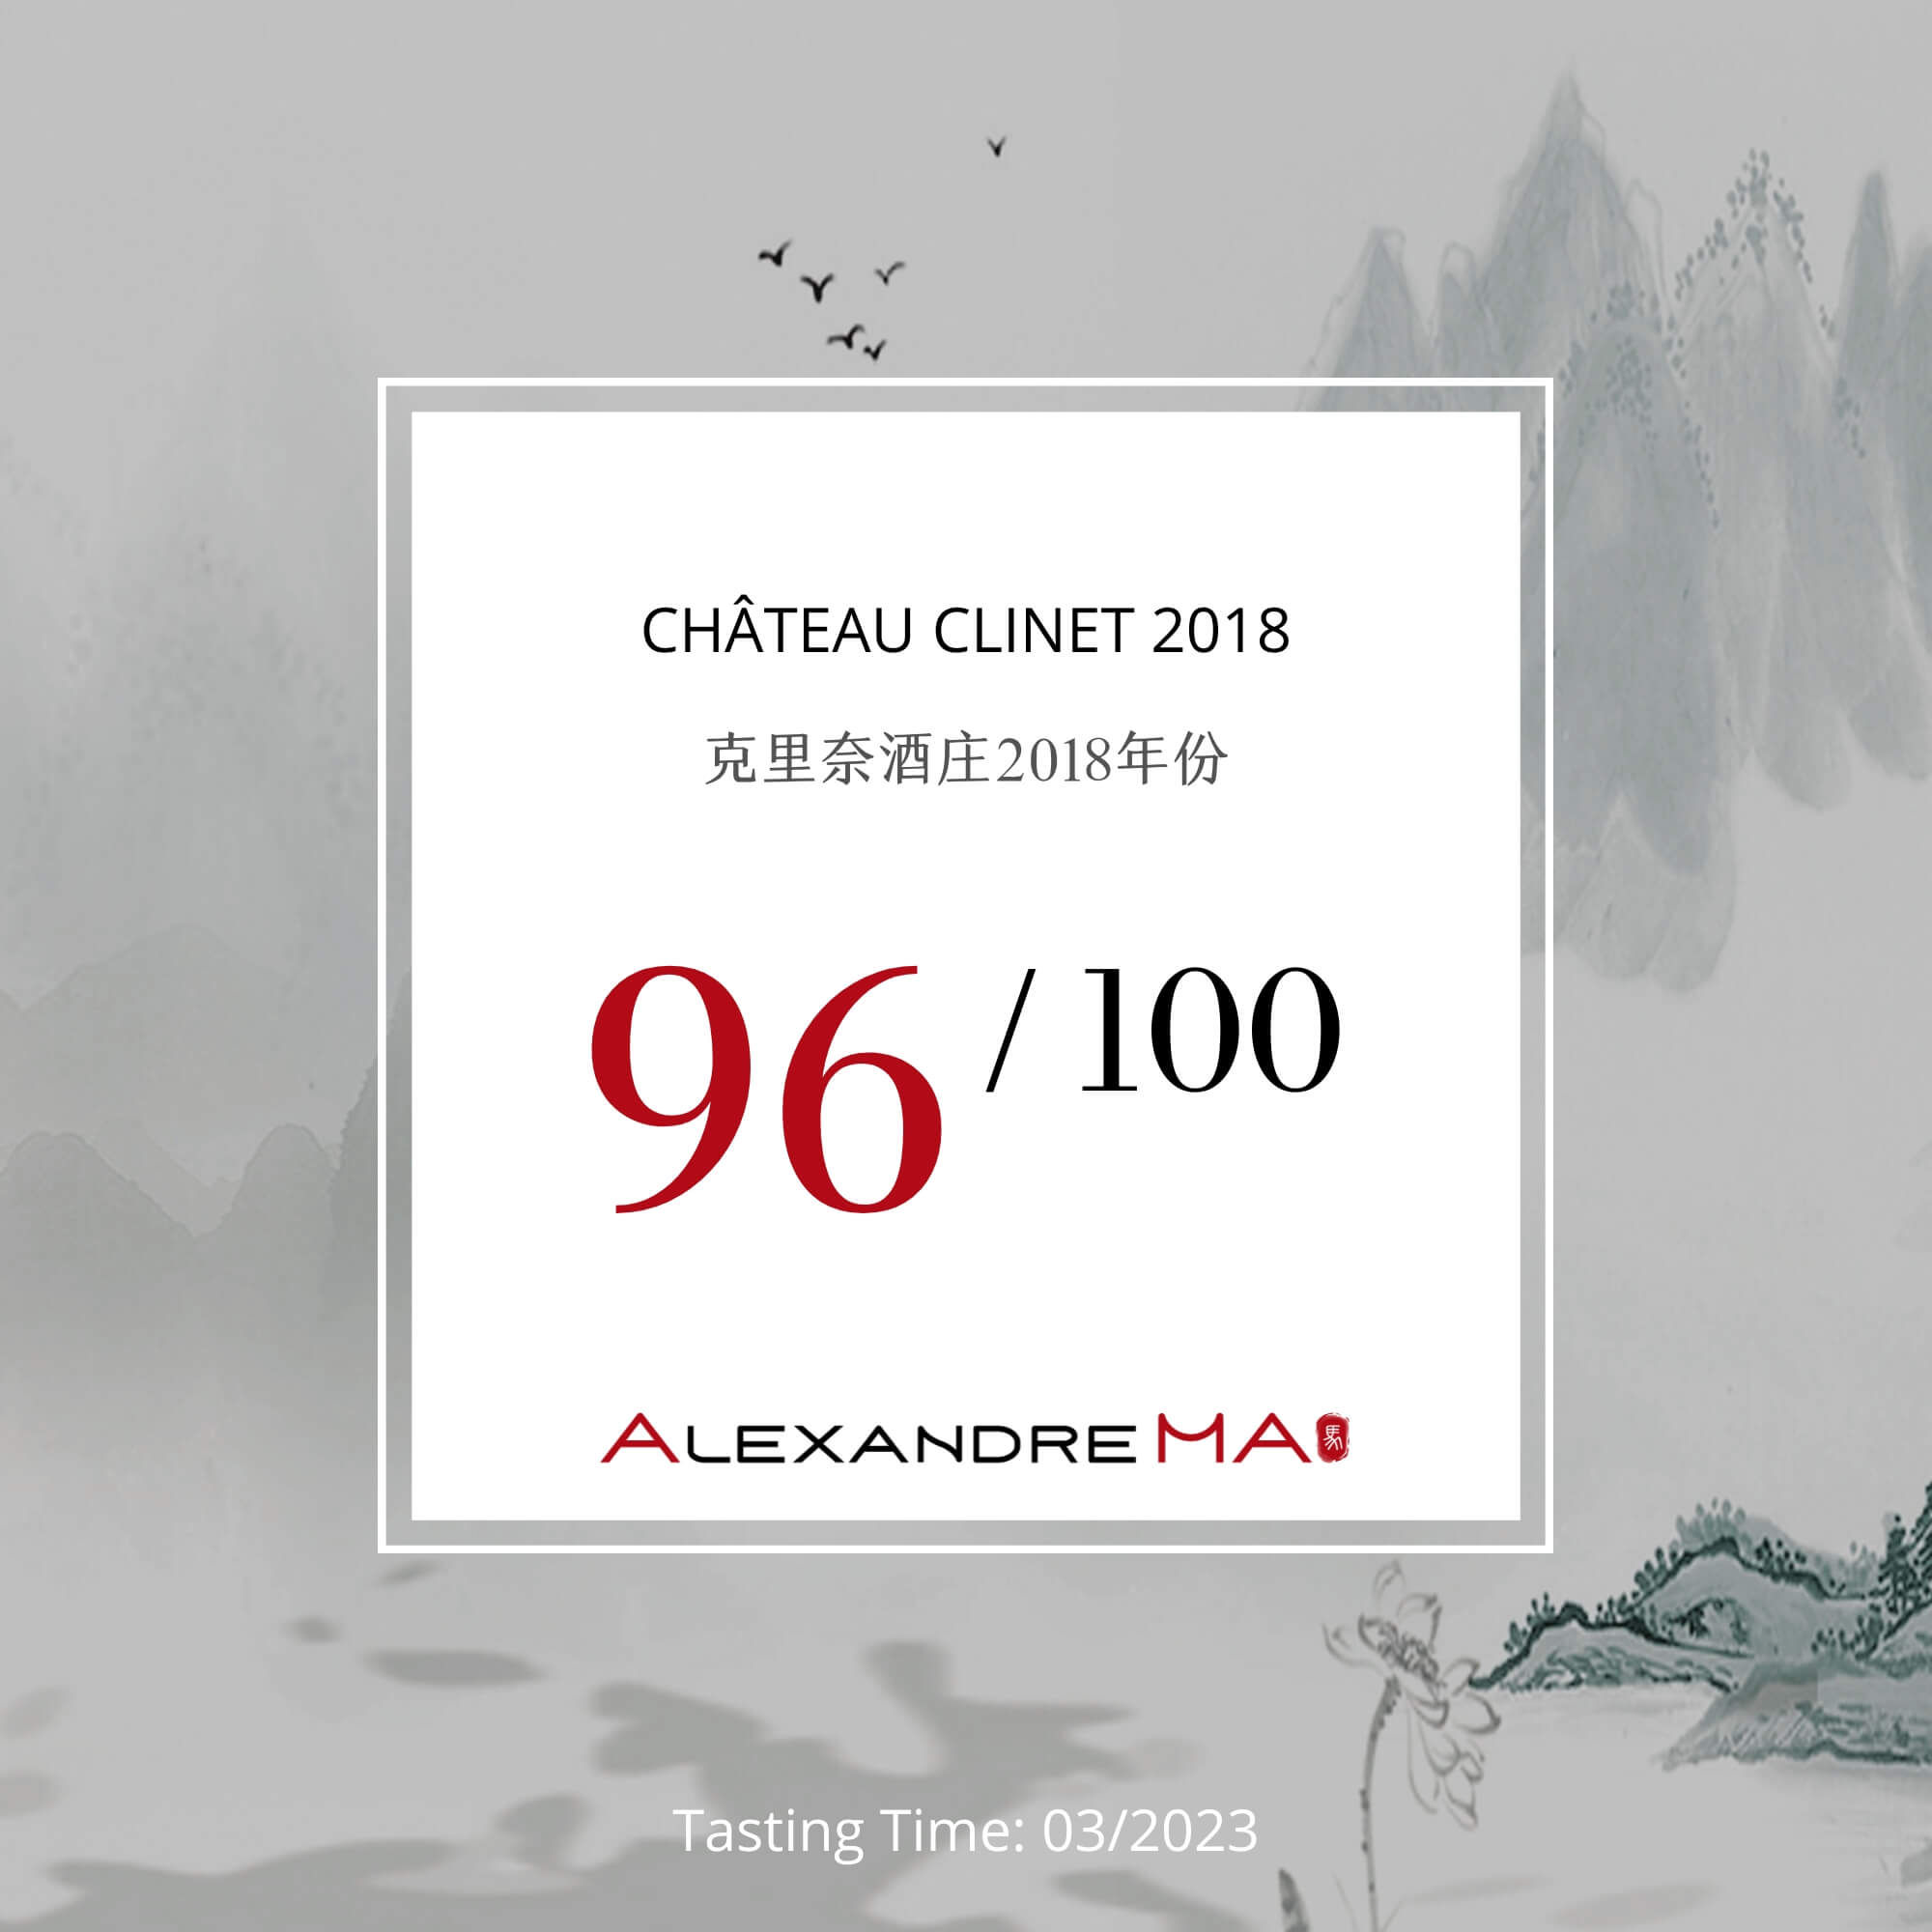 Château Clinet 2018 - Alexandre MA